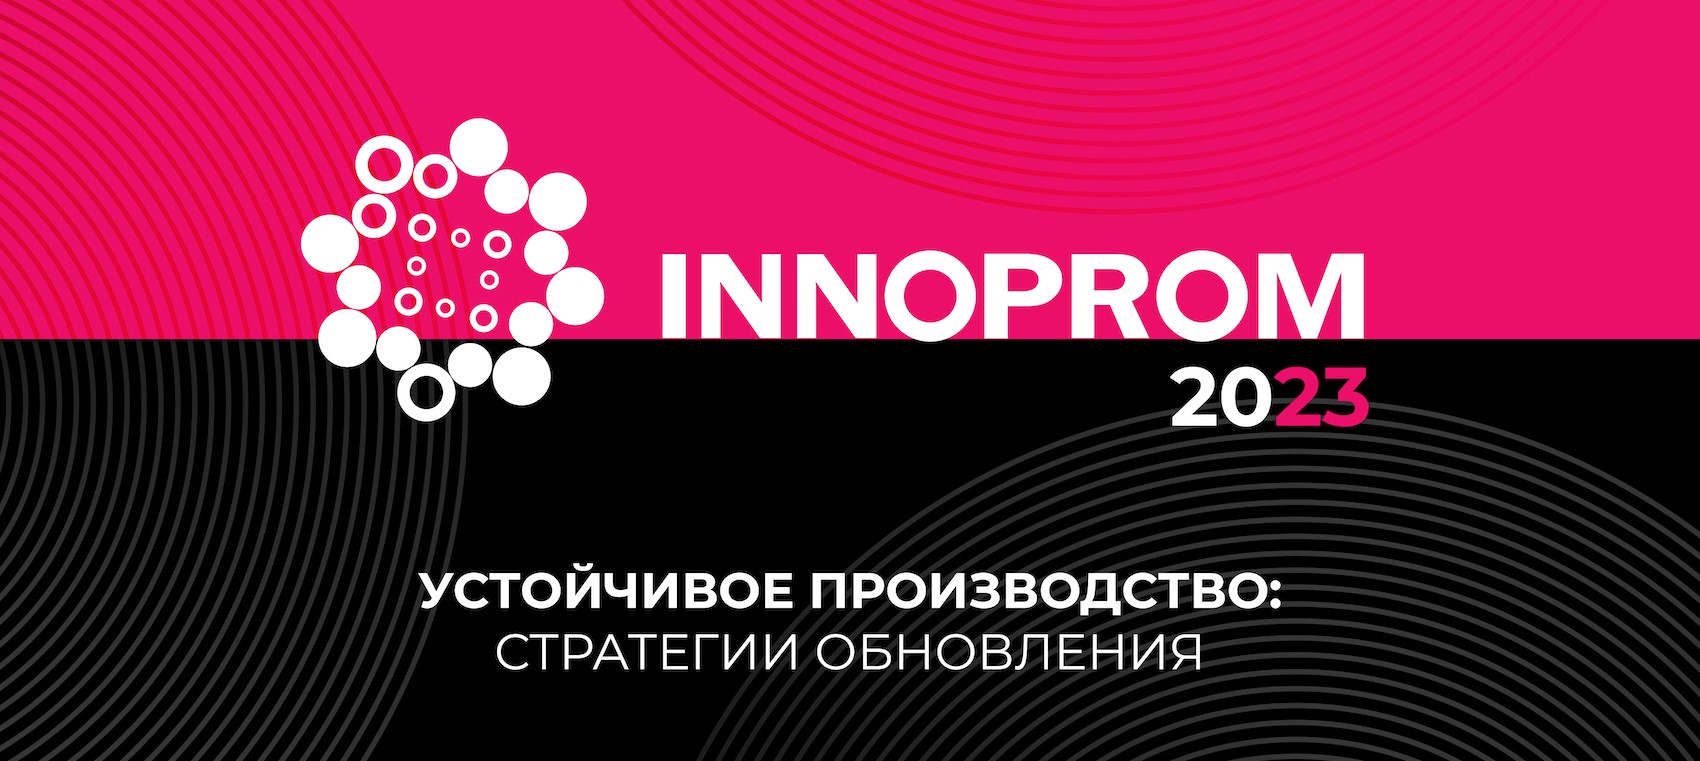 ИННОПРОМ-2023 Екатеринбург. Международная промышленная выставка